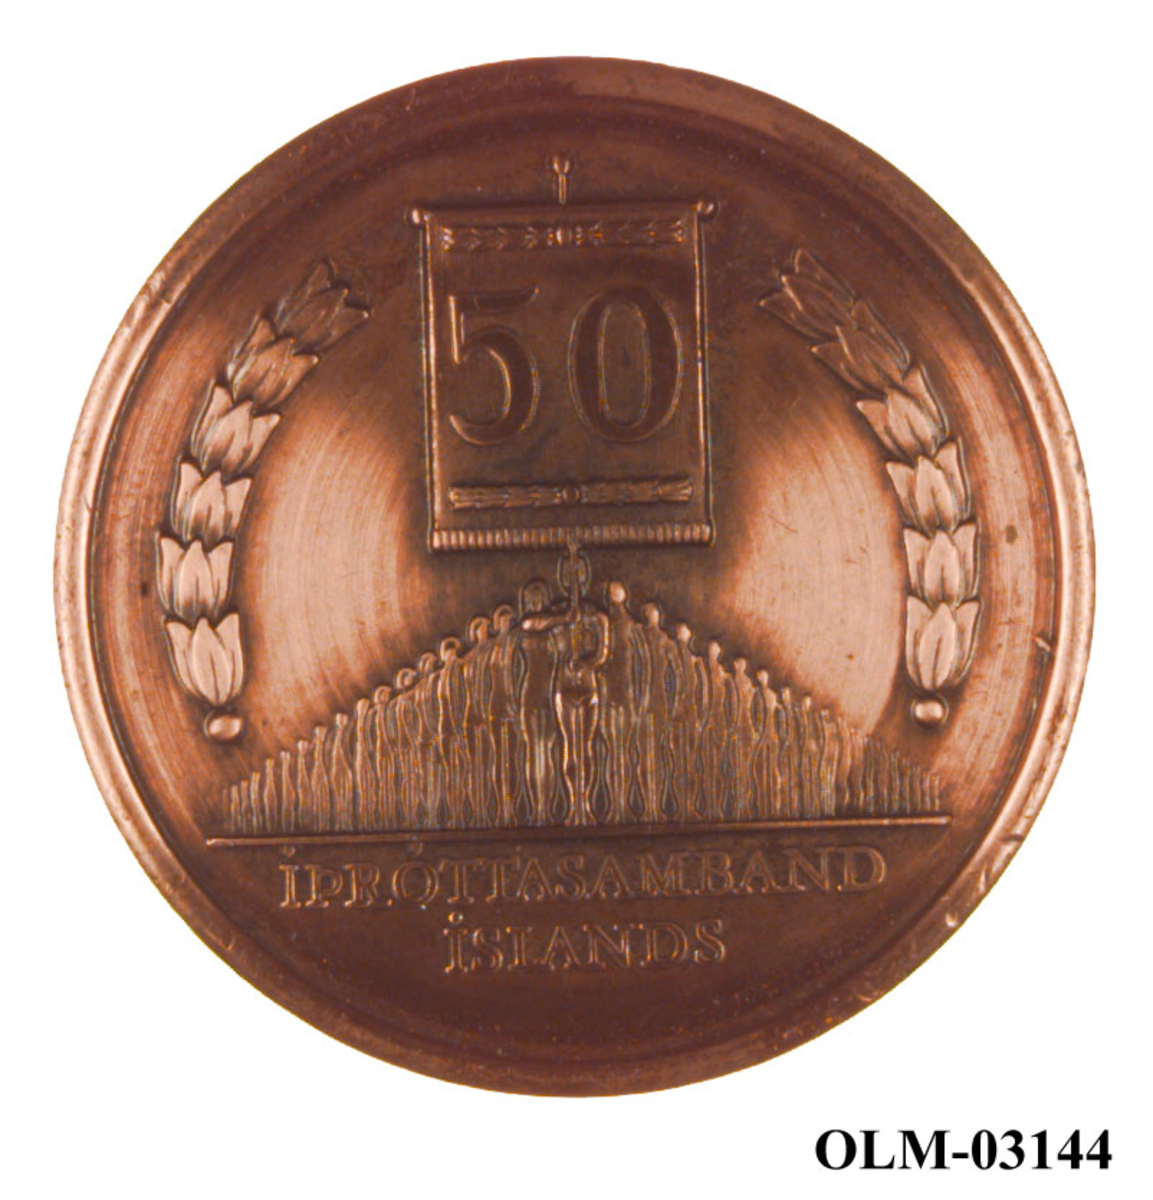 Bronsefarget medalje med islandsk innskrift og motiv av en menneskegruppe med en fane. Det er også motiv av et våpenskjold.